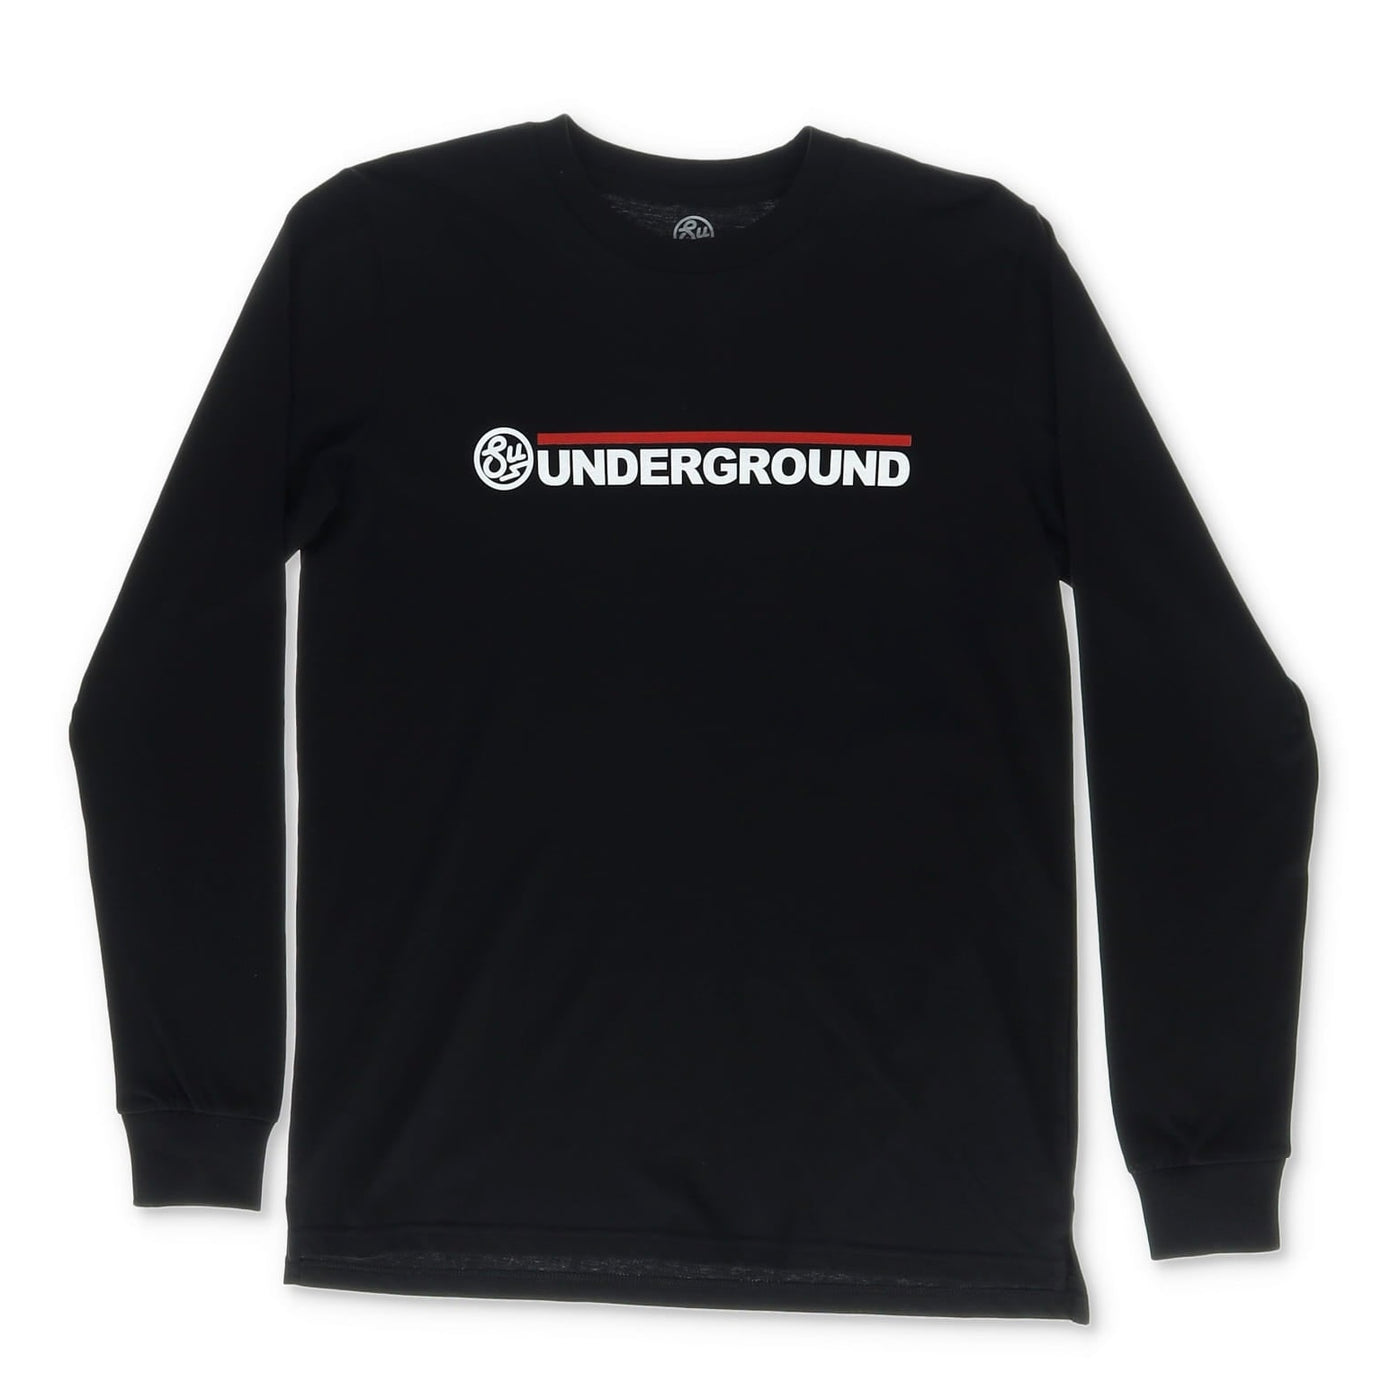 Swimbait Underground Wordmark Logo Long Sleeve Shirt - Black